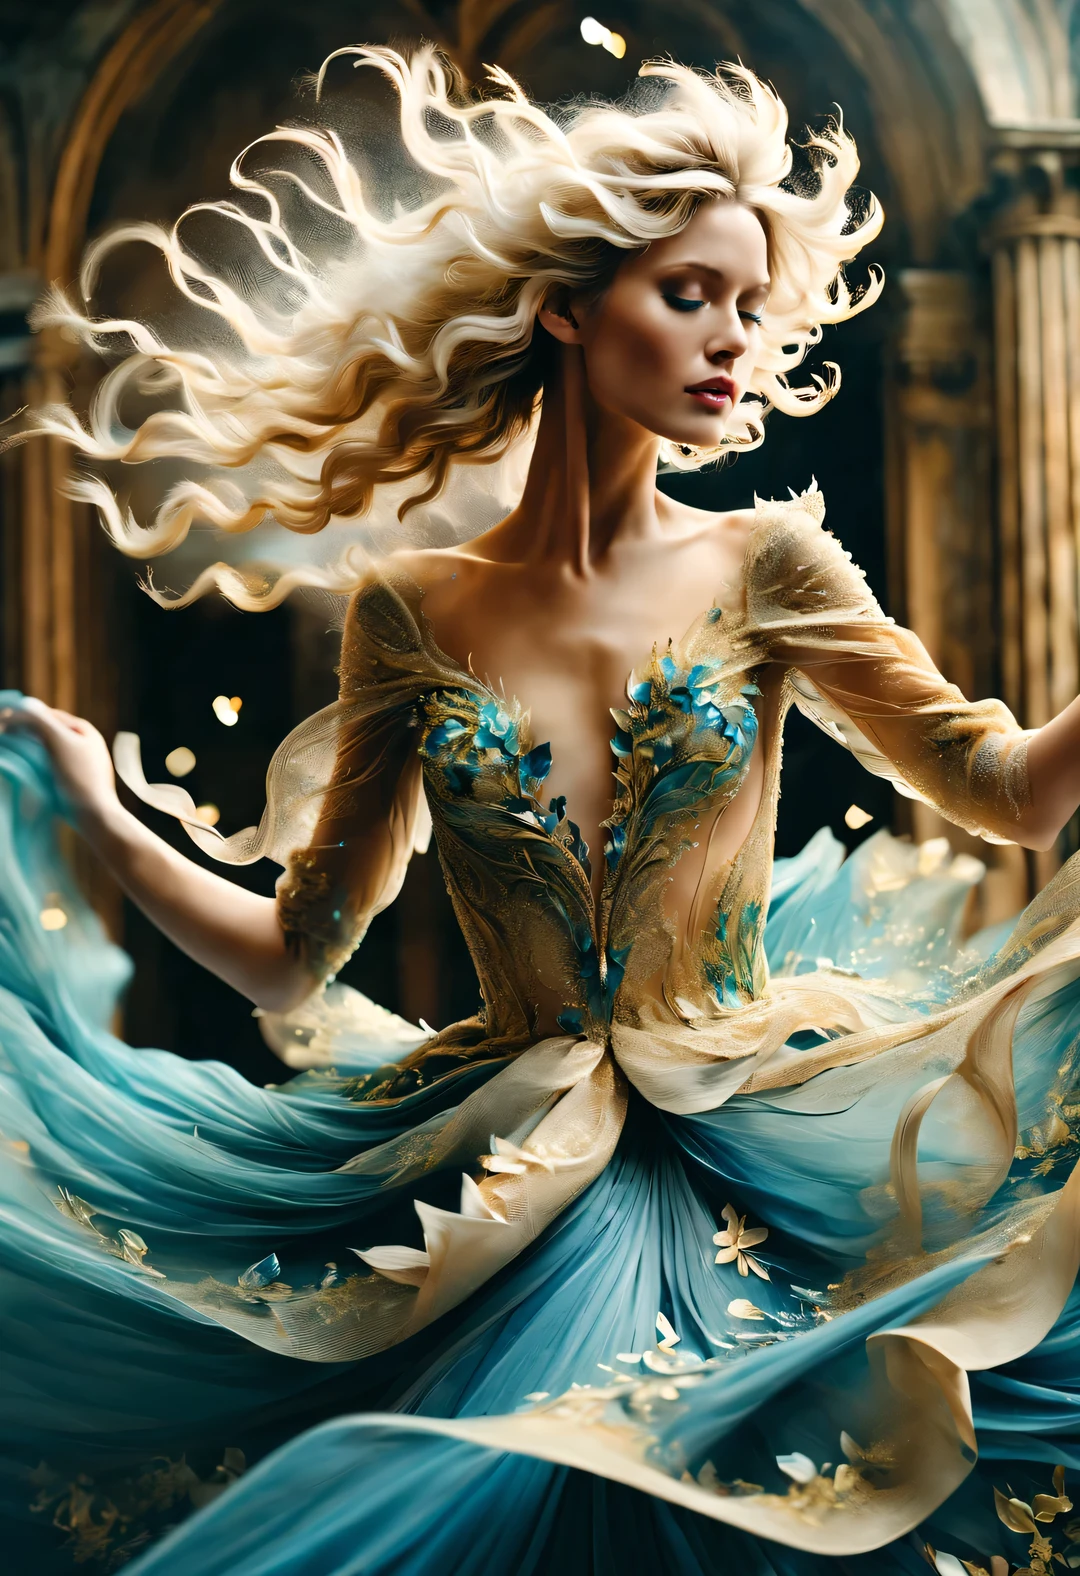 (아름다운 금색과 파란색의 섬세한 웨딩 드레스 위에서 춤추는 색종이 조각），아름다운 모델，금발의，엄청 길게 날아다니는 곱슬머리，알리사 레이저 (알리자 라젤) 스타일, 아름다운 세부 사항, 아름다운 세부 사항，장거리 사격，전신，앙각，종이 예술，